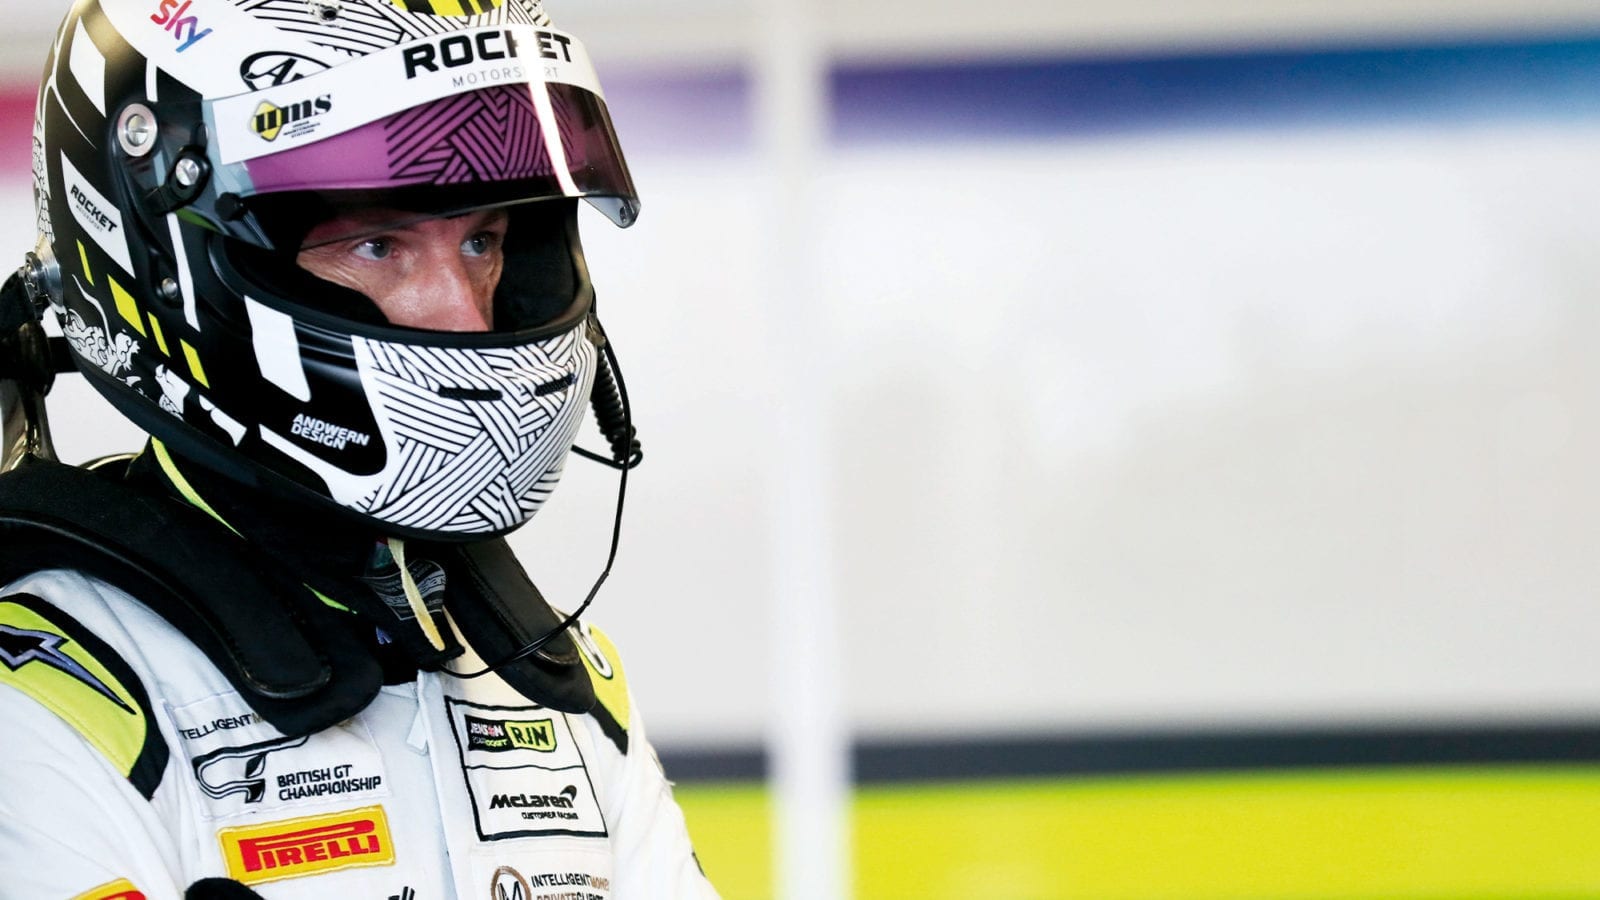 Jenson Button in Rocket RJN racesuit